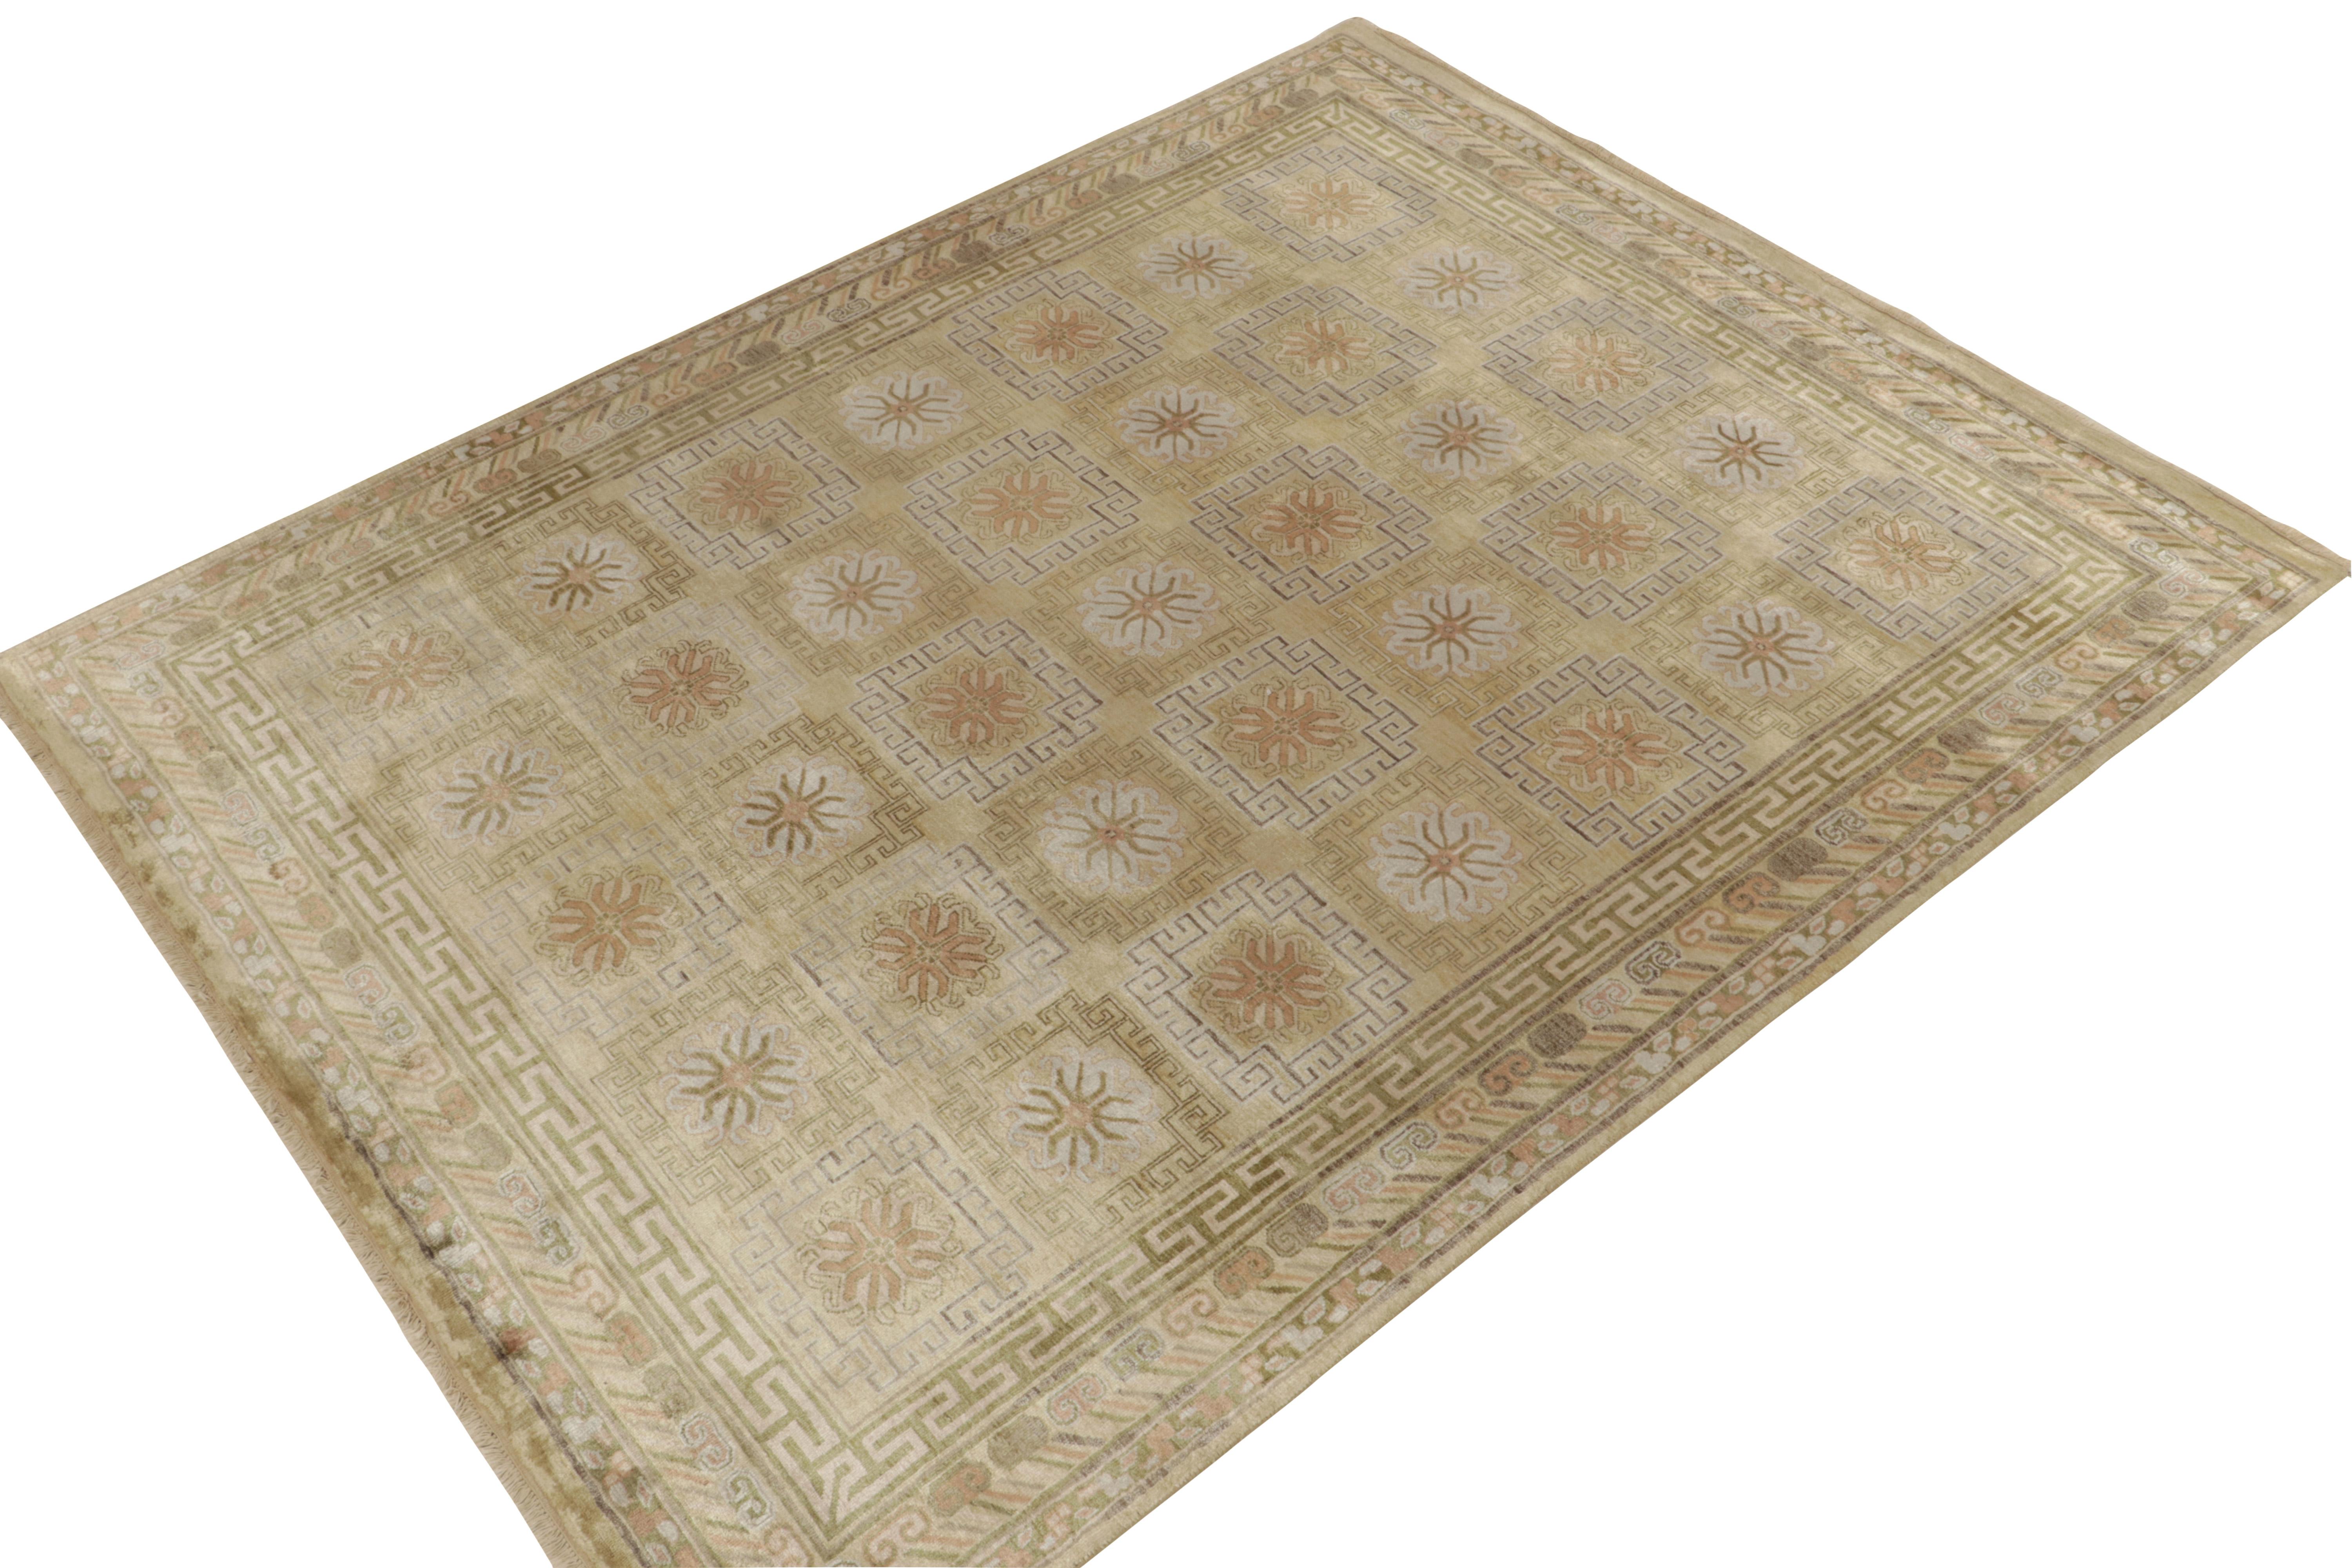 Dieser 8x10 große Teppich aus unserer Modern Classics-Kollektion ist aus luxuriöser Seide handgeknüpft und besonders von antiken Khotan-Samarkand-Teppichen inspiriert.

Über das Design: Eine anmutige Skala beherbergt einen verführerischen gold- und